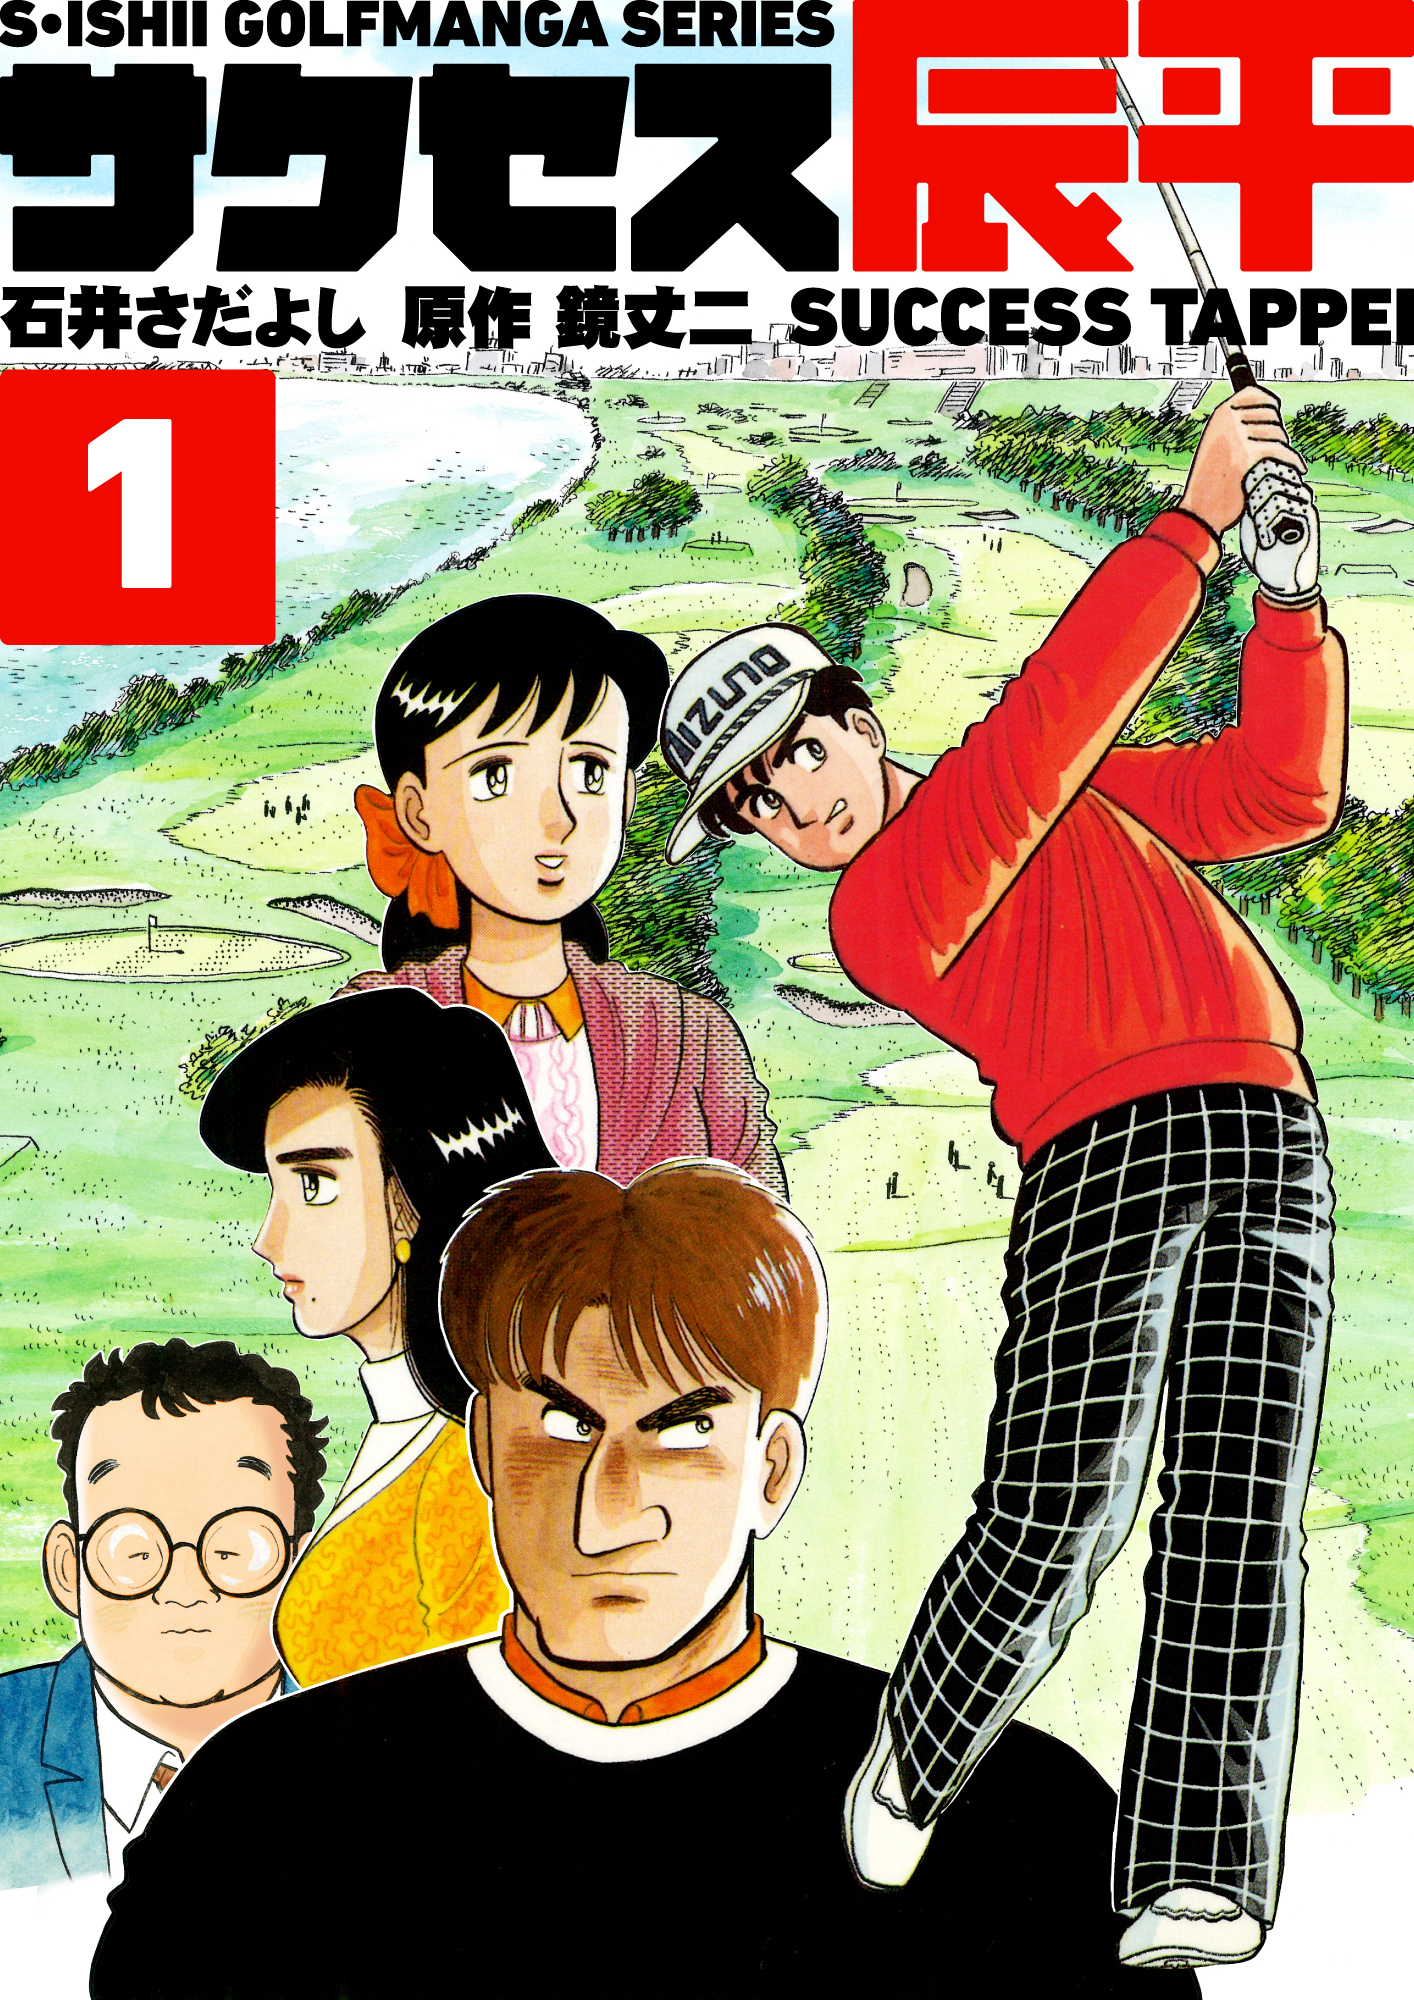 石井さだよしゴルフ漫画シリーズ サクセス辰平 1巻 無料 試し読みなら Amebaマンガ 旧 読書のお時間です